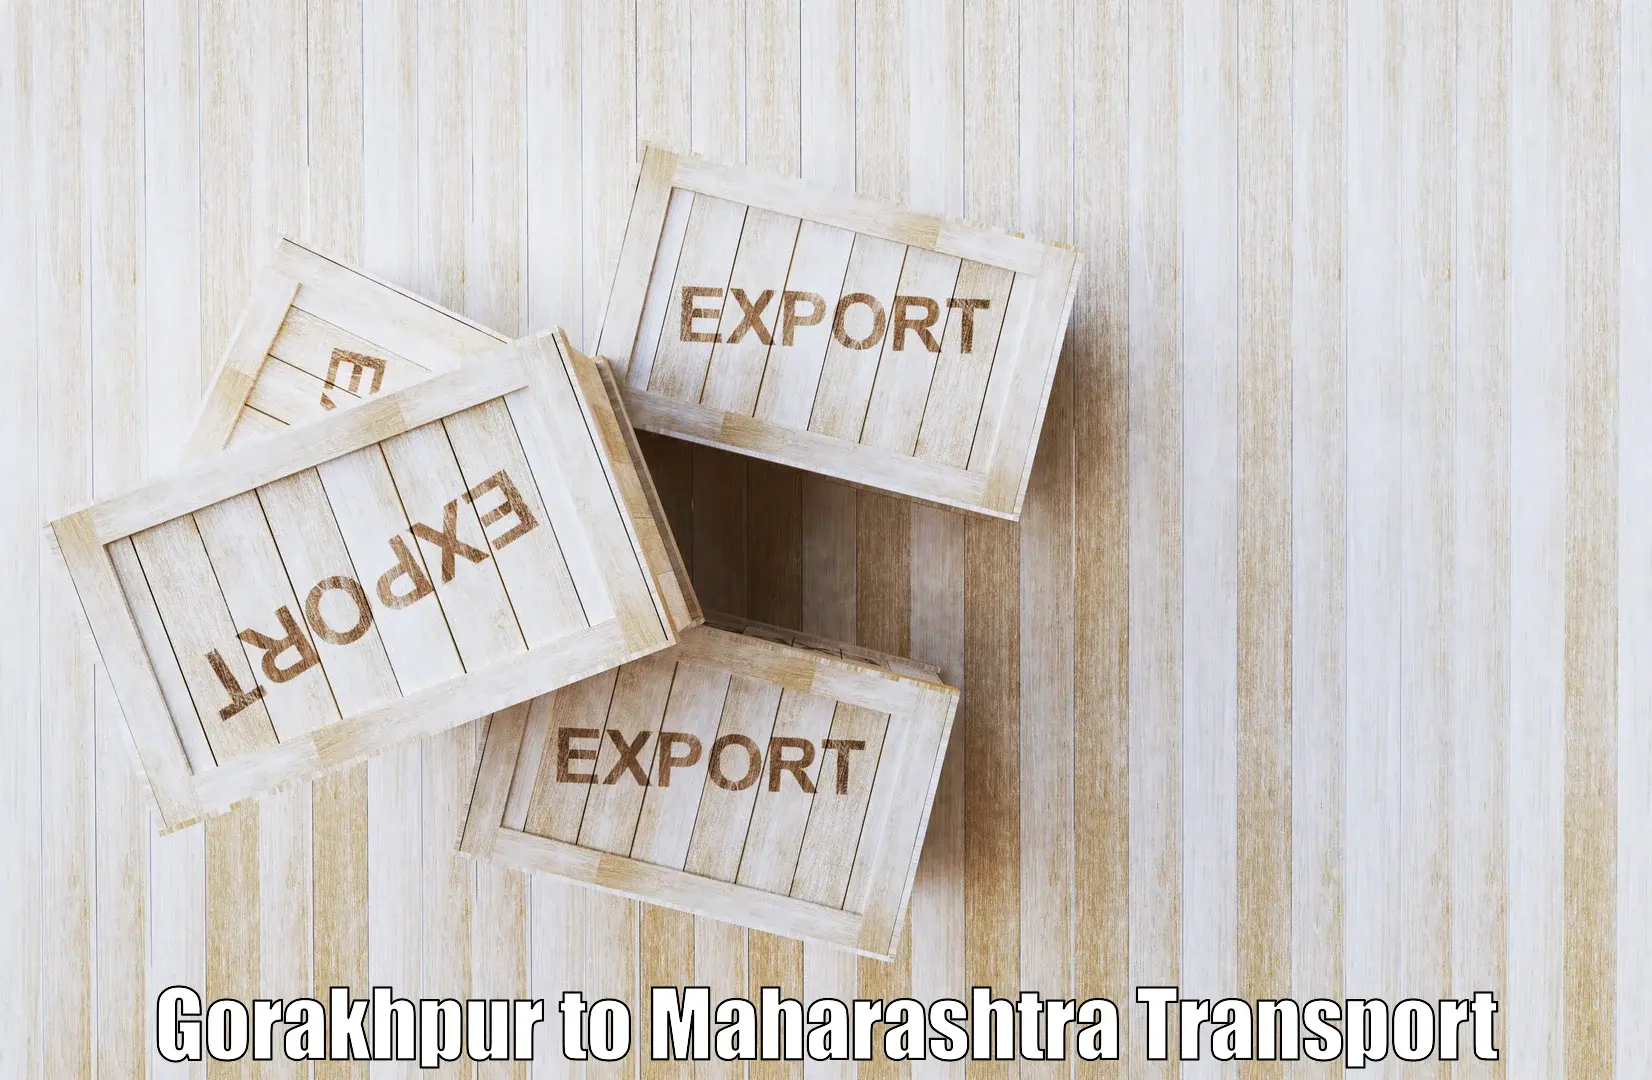 Shipping services Gorakhpur to Palghar